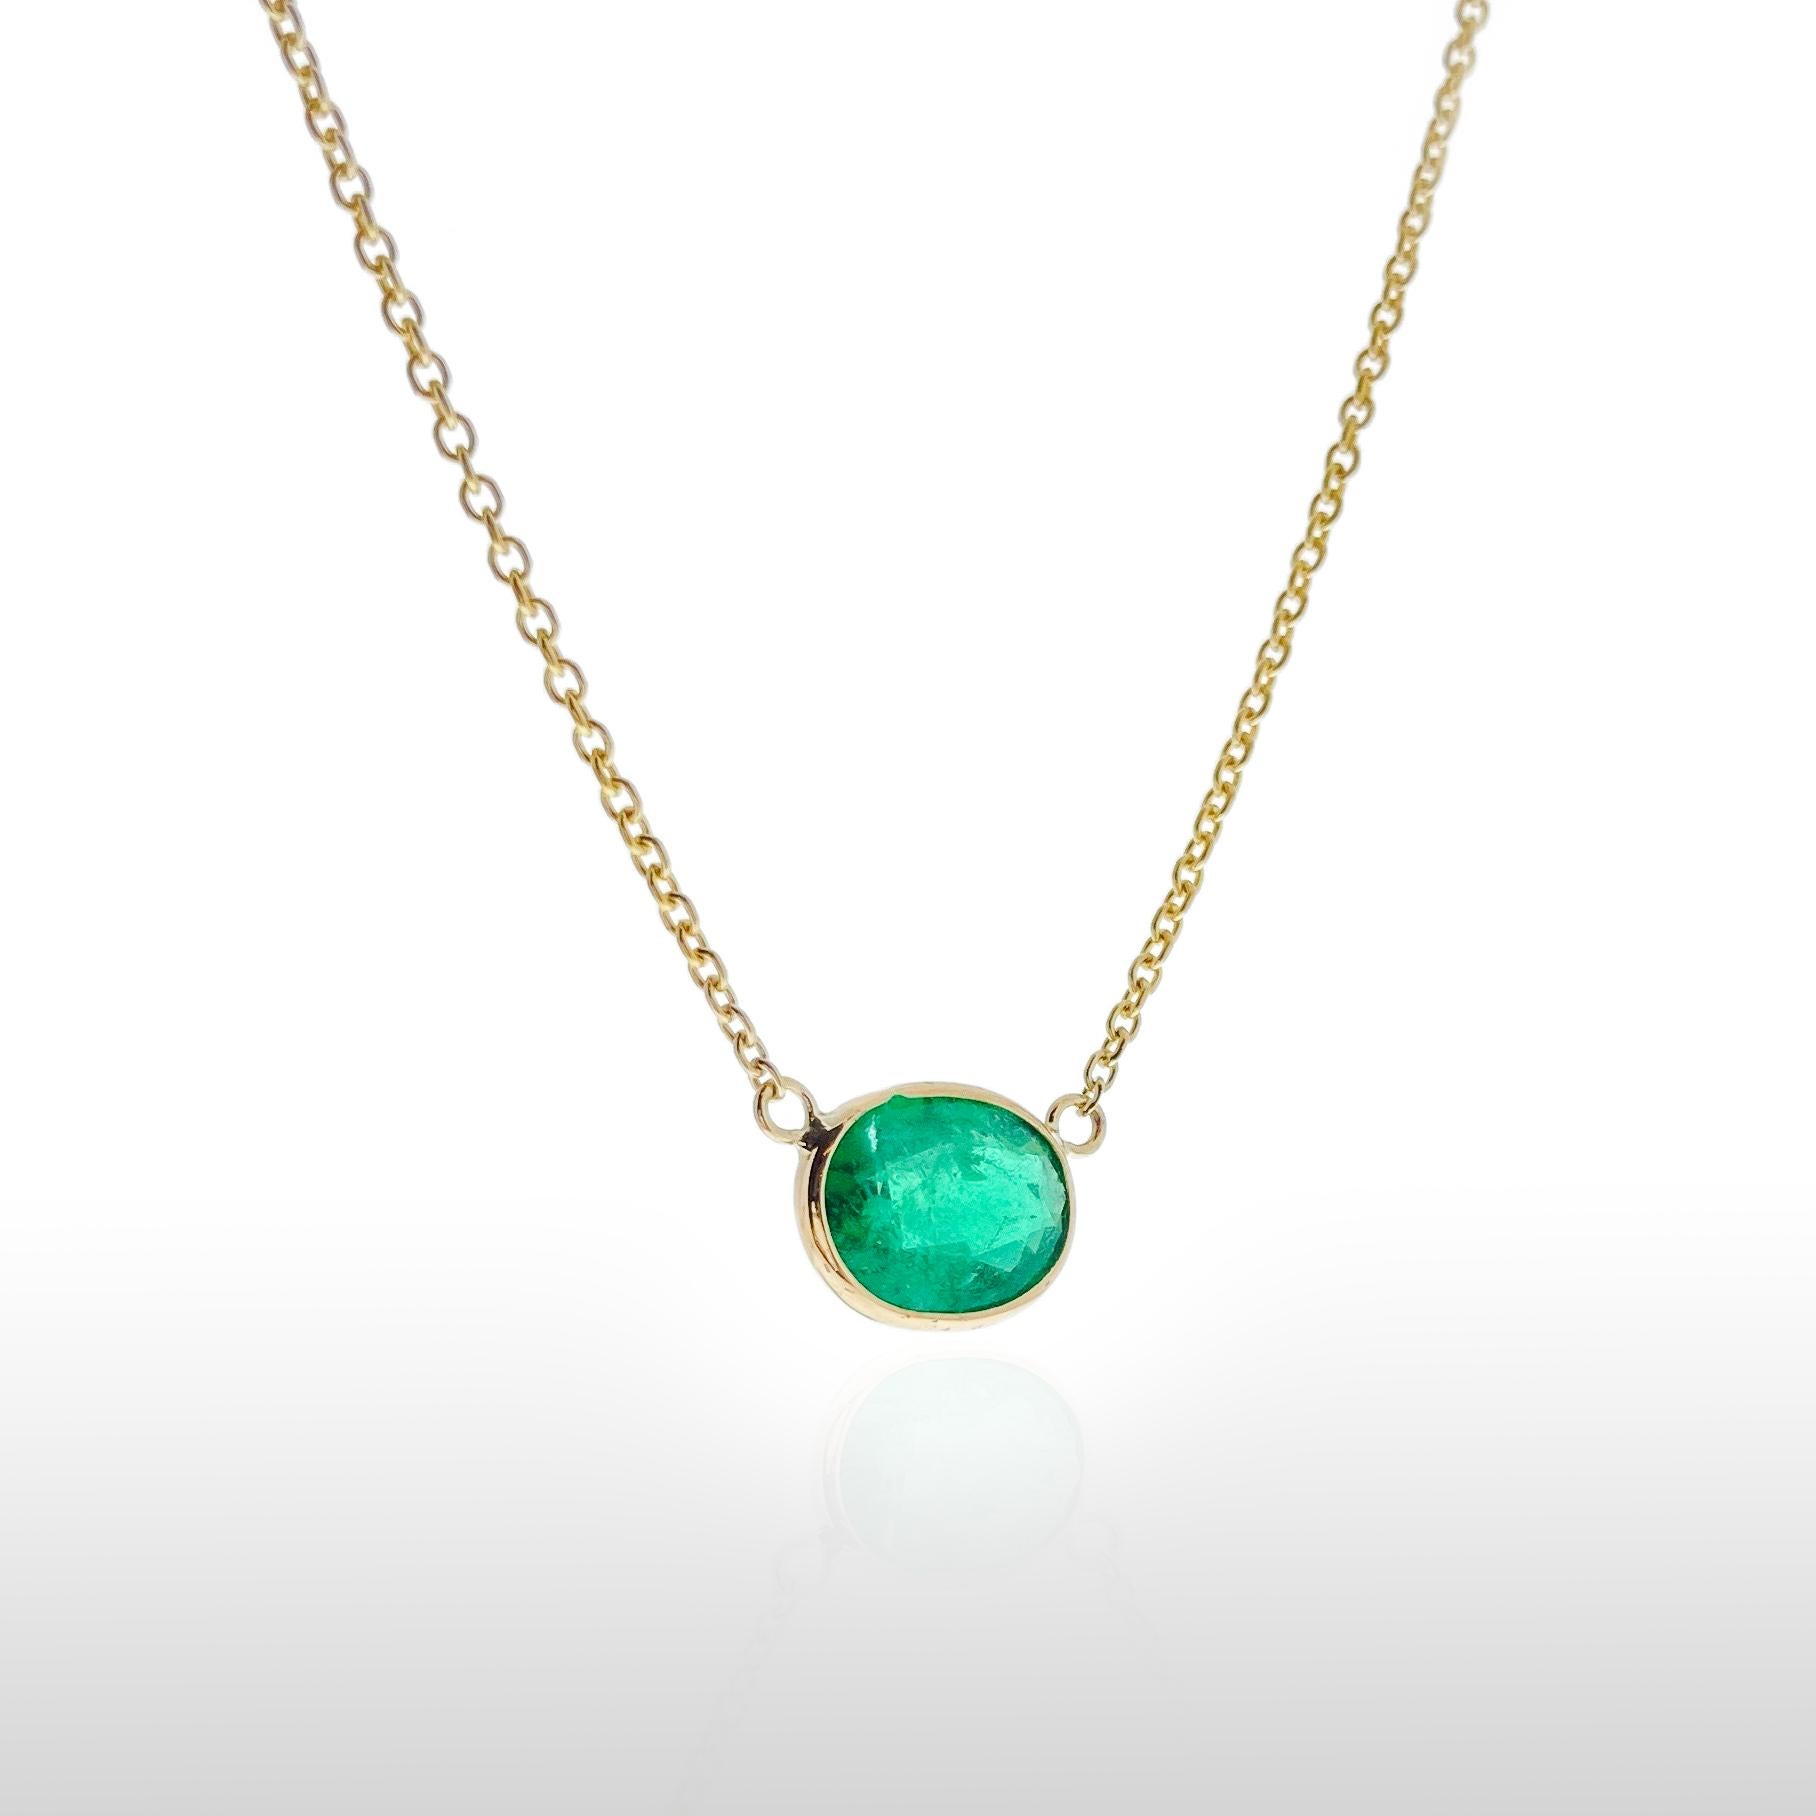 Dieses Collier zeigt einen grünen Smaragd im Ovalschliff mit einem Gewicht von 1,44 Karat, gefasst in 14 Karat Gelbgold (YG). Smaragde sind bekannt für ihre satte grüne Farbe, und der ovale Schliff ist eine klassische und zeitlose Wahl für